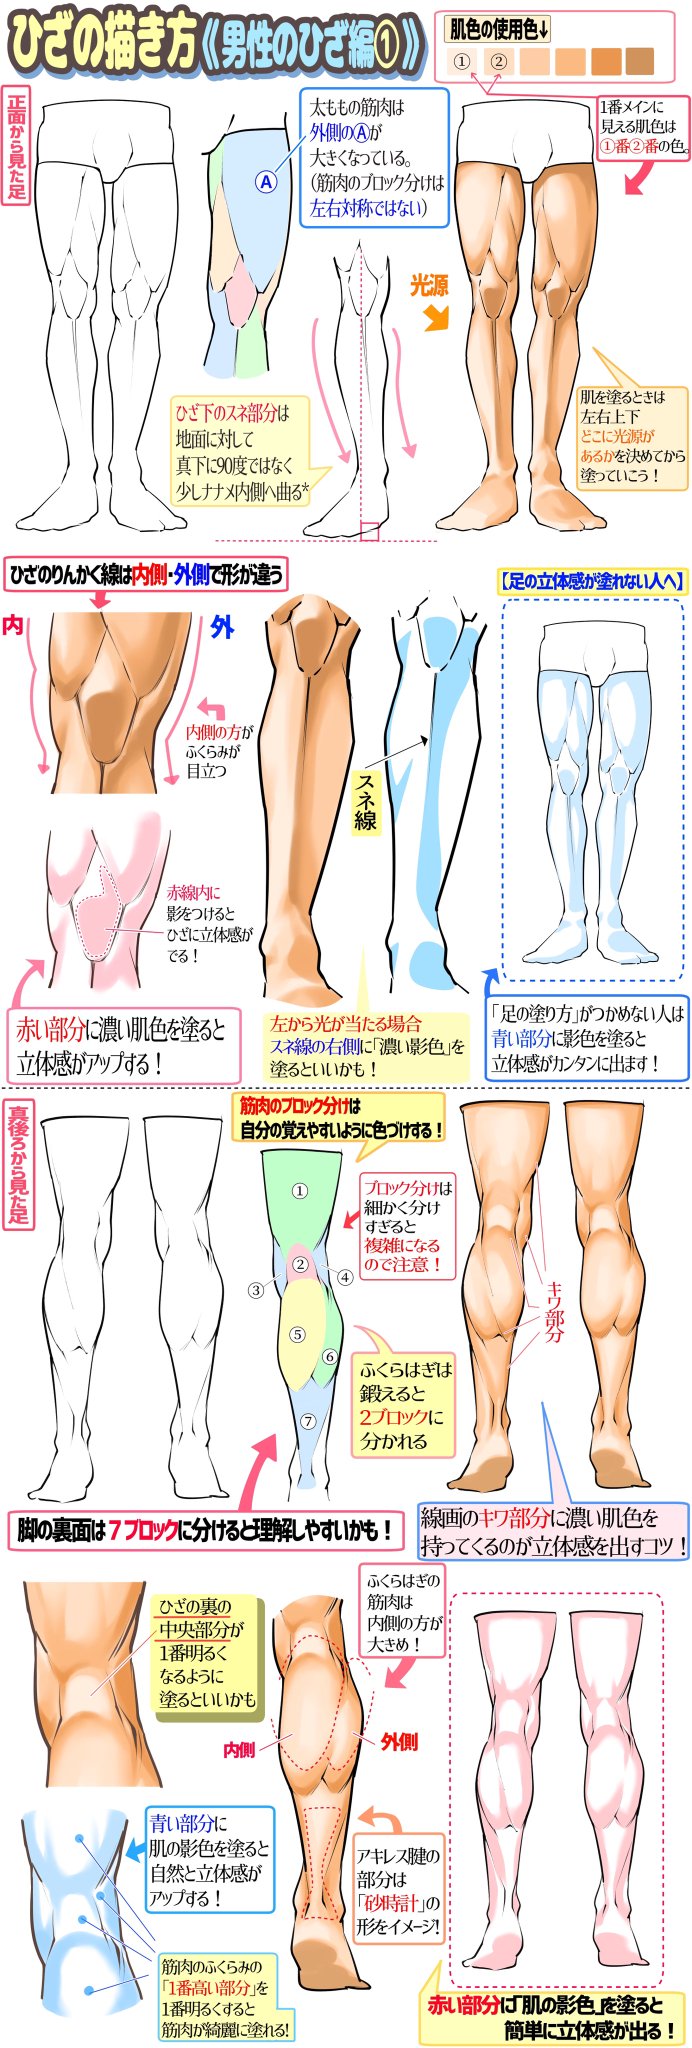 Twoucan 筋肉を描く の注目ツイート イラスト マンガ コスプレ モデル